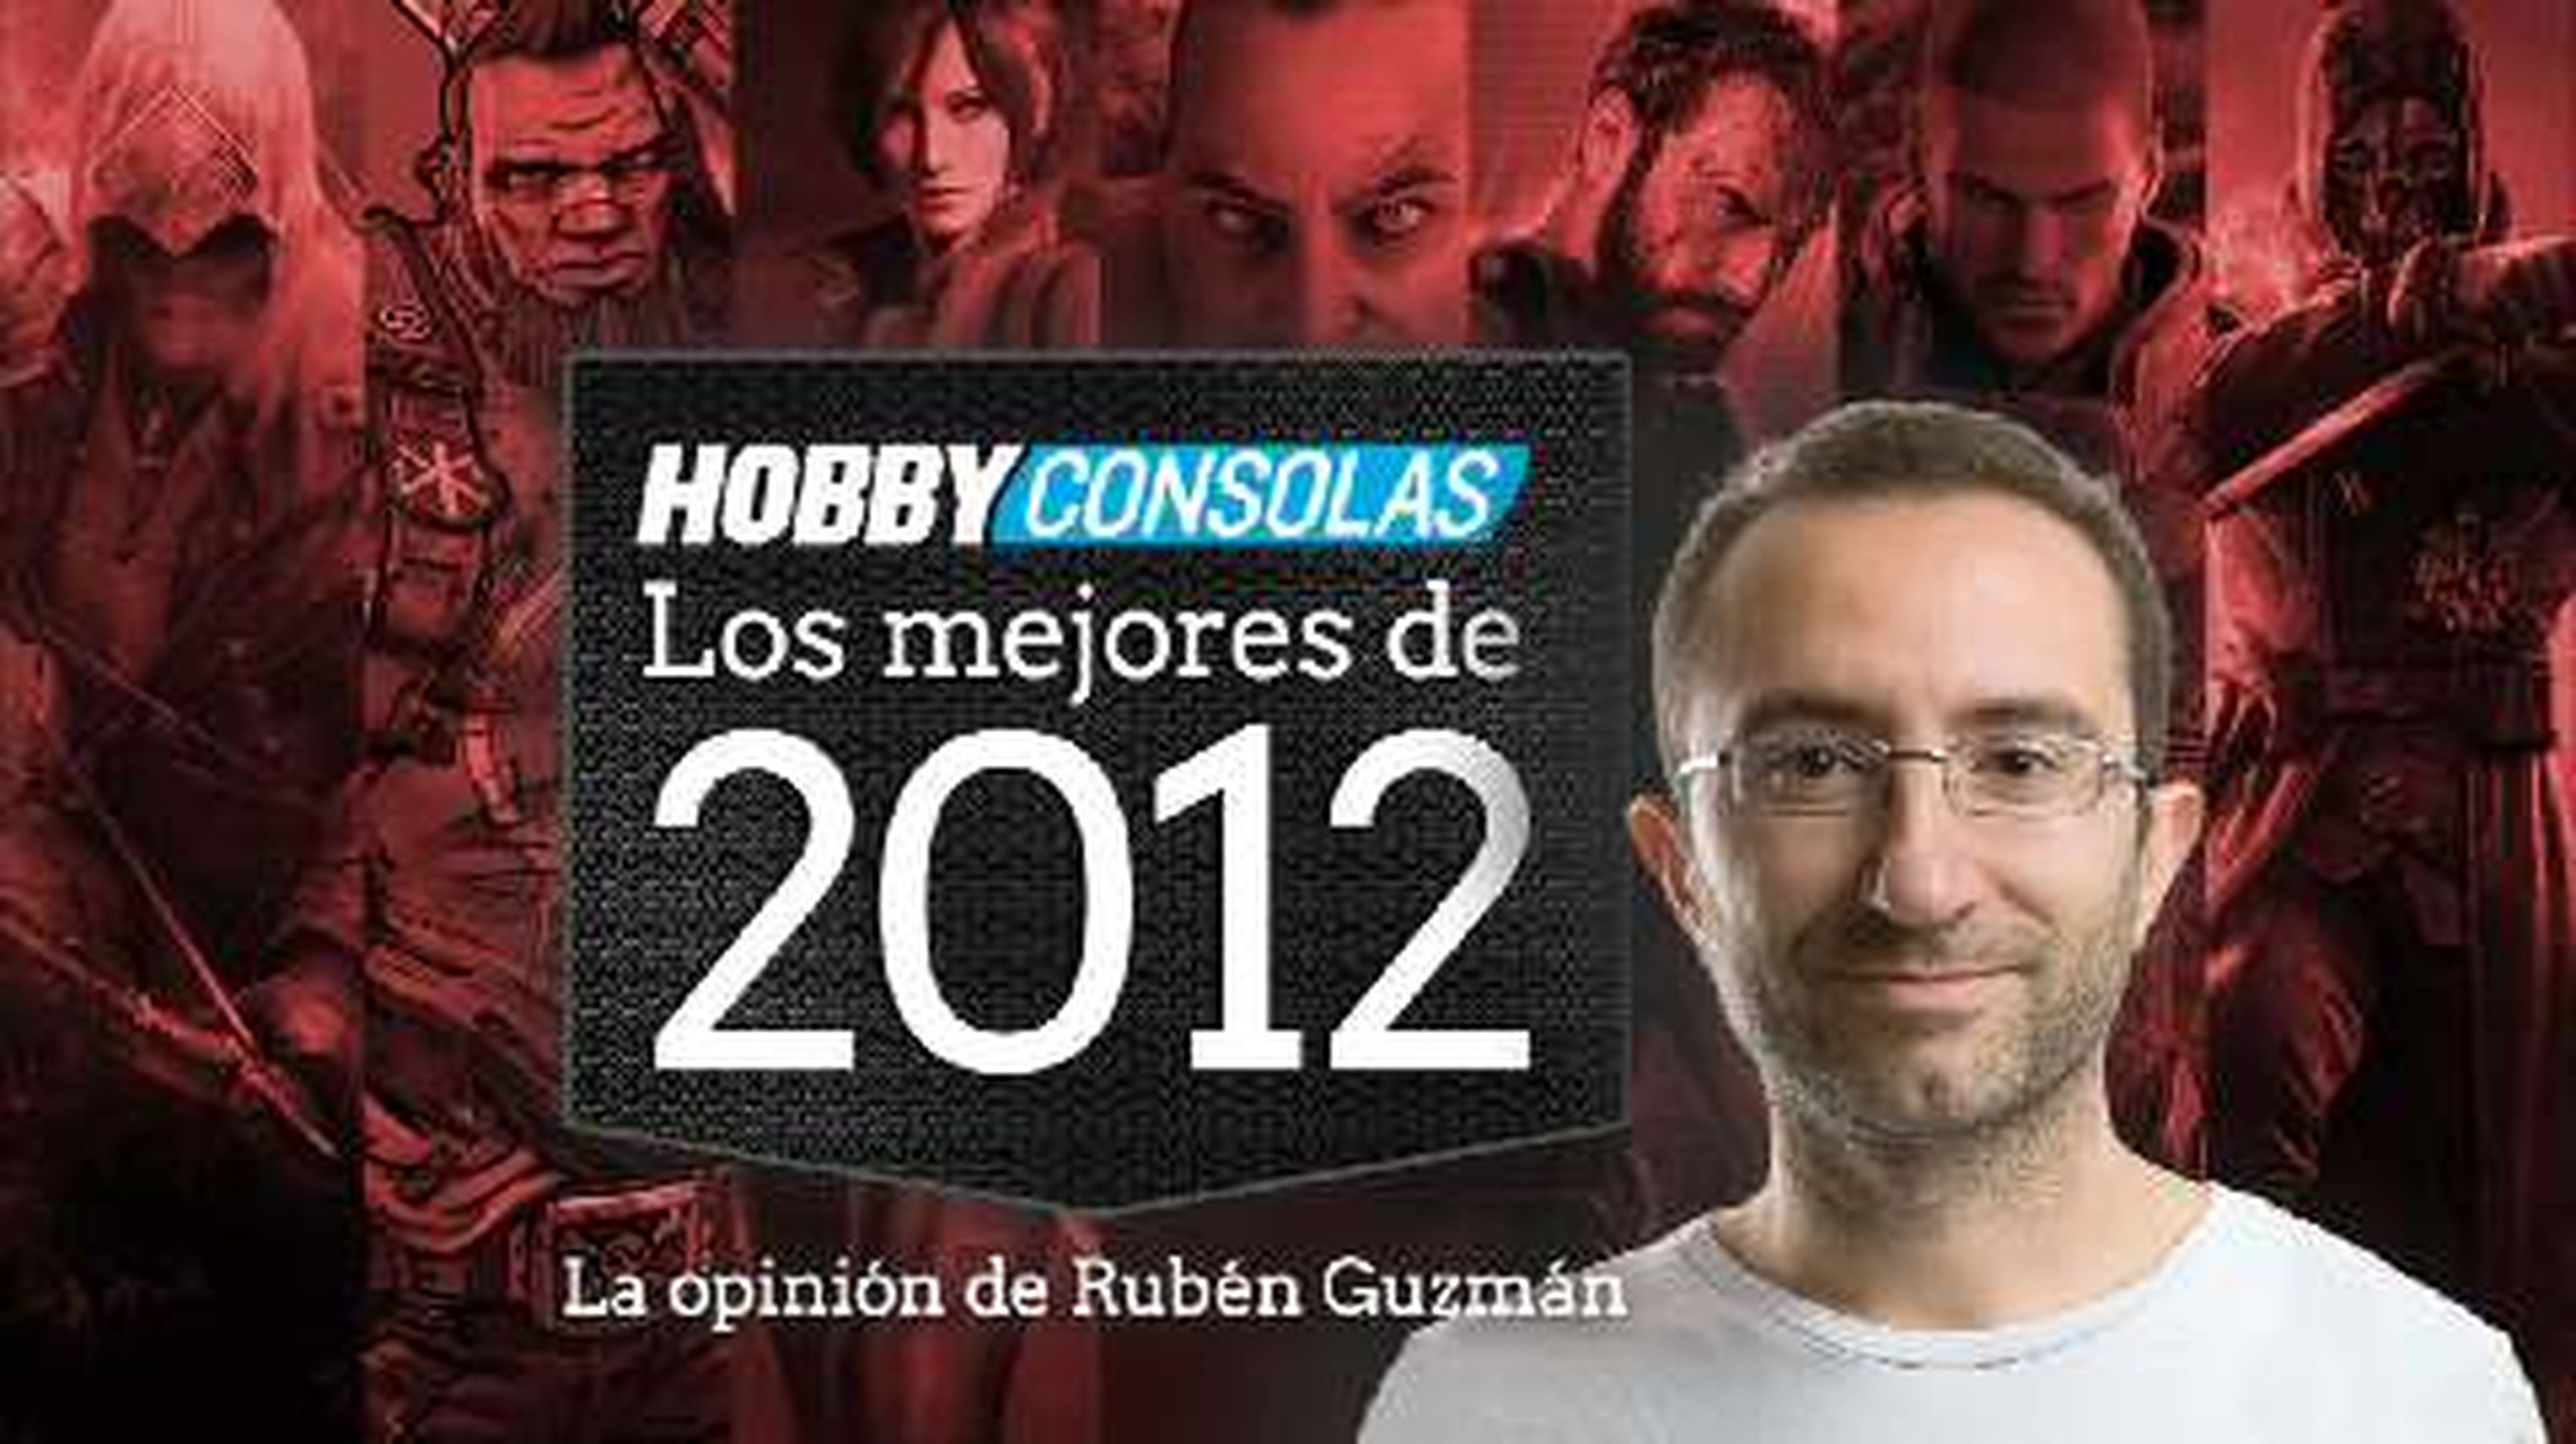 Lo mejor de 2012 (HD) Rubén Guzmán en HobbyConsolas.com